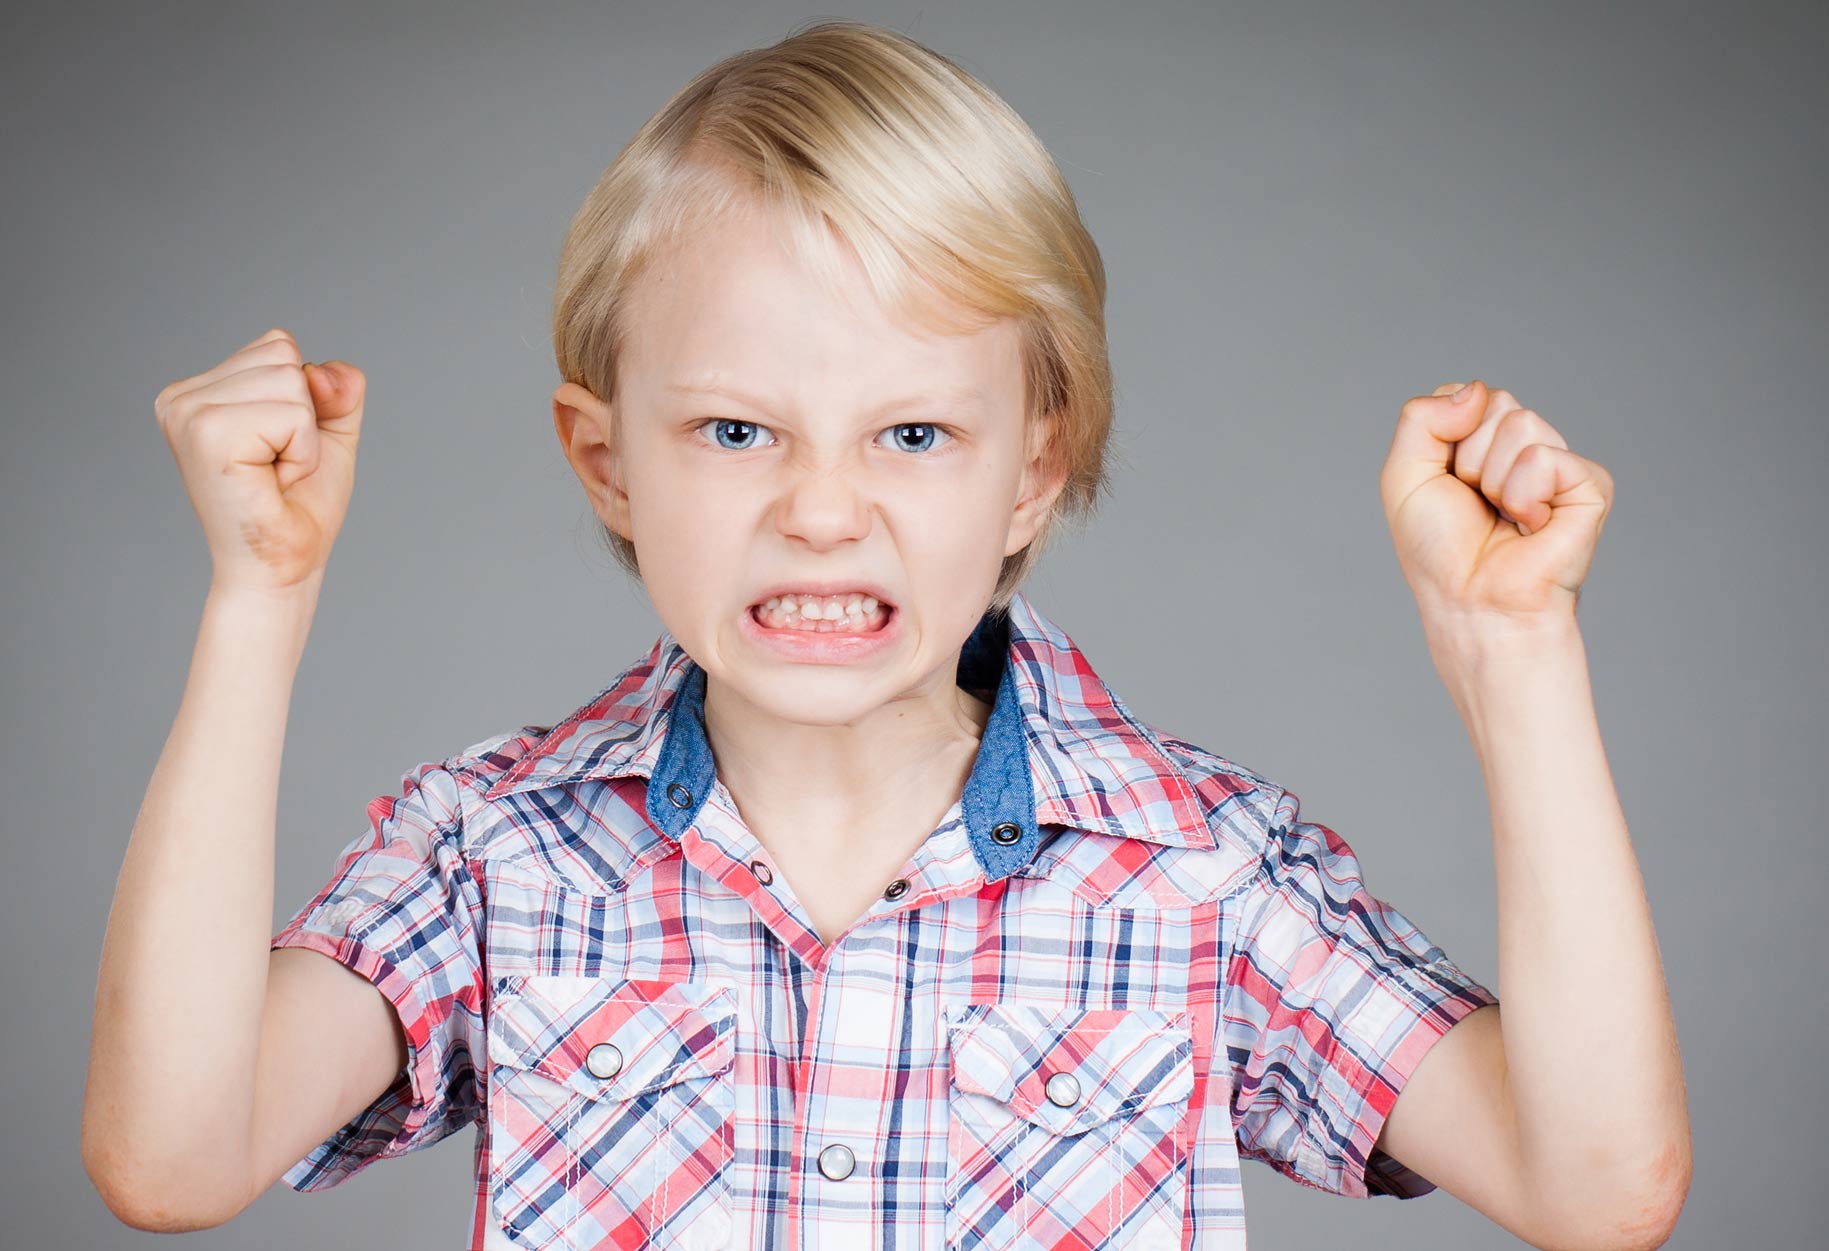 Mit csináljak ezzel a gyerekkel? - Dr. Büki György gyermekneurológus  válaszol - figyelemzavaros, hiperaktív gyerekek - Blikk